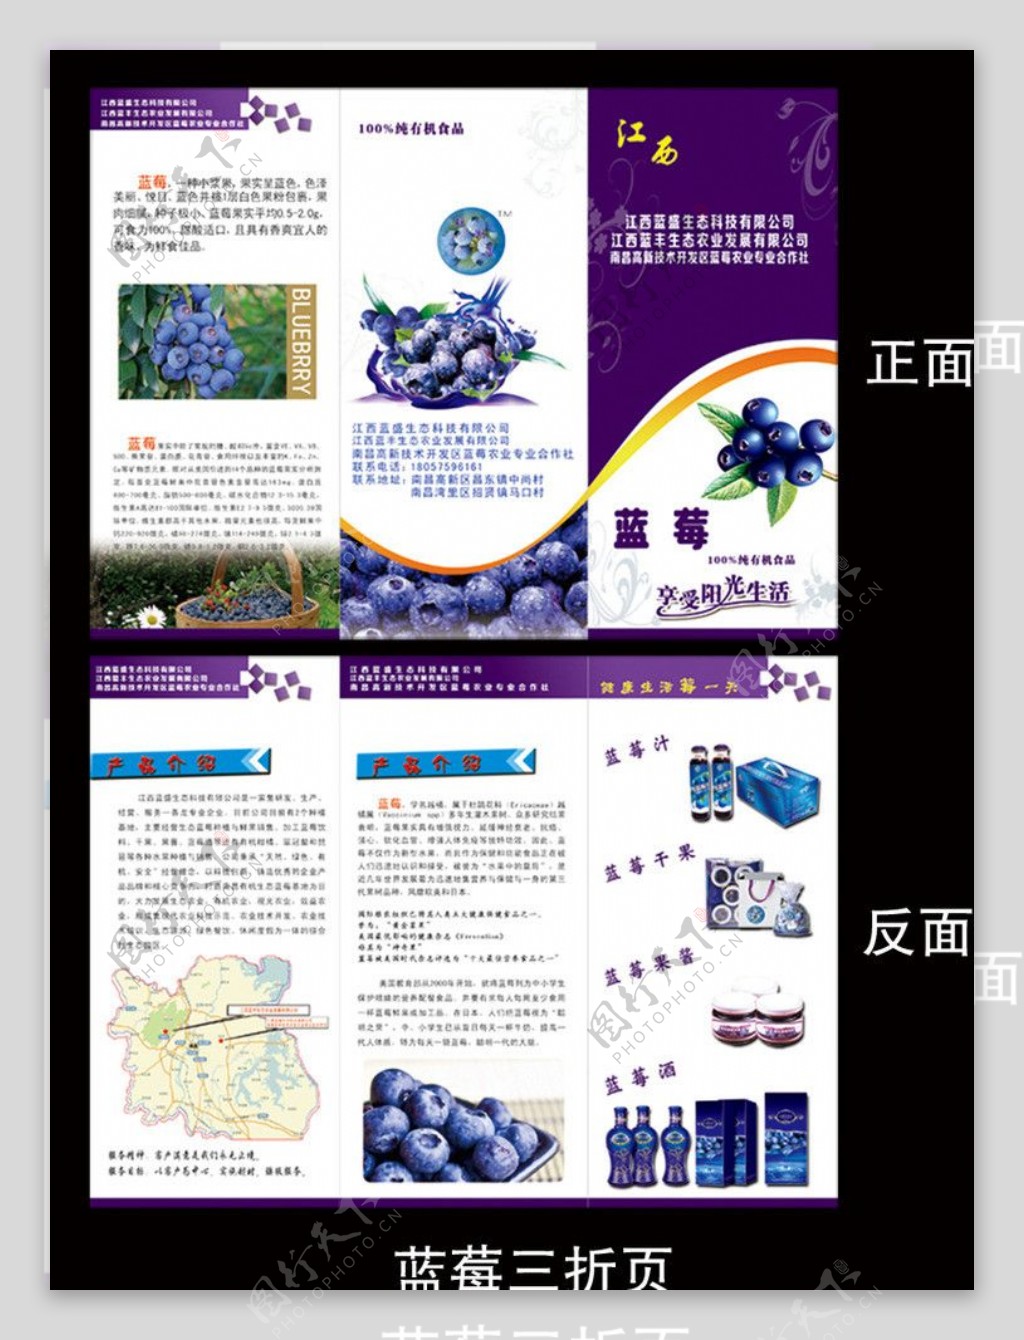 蓝莓三折页图片